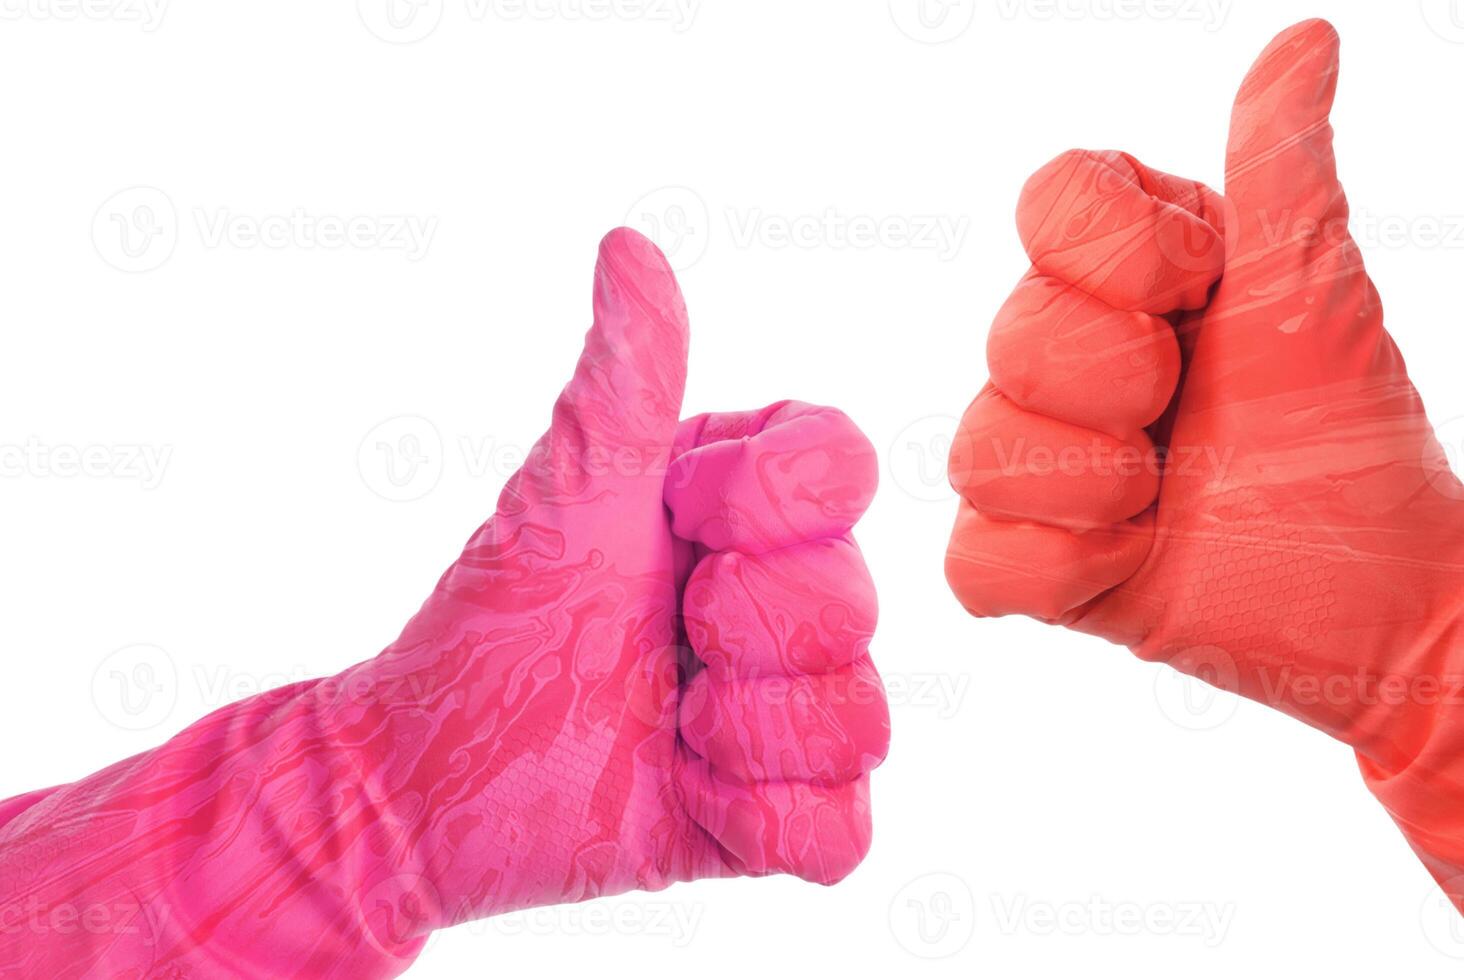 La mano de un hombre con guantes de trabajo de goma azul muestra